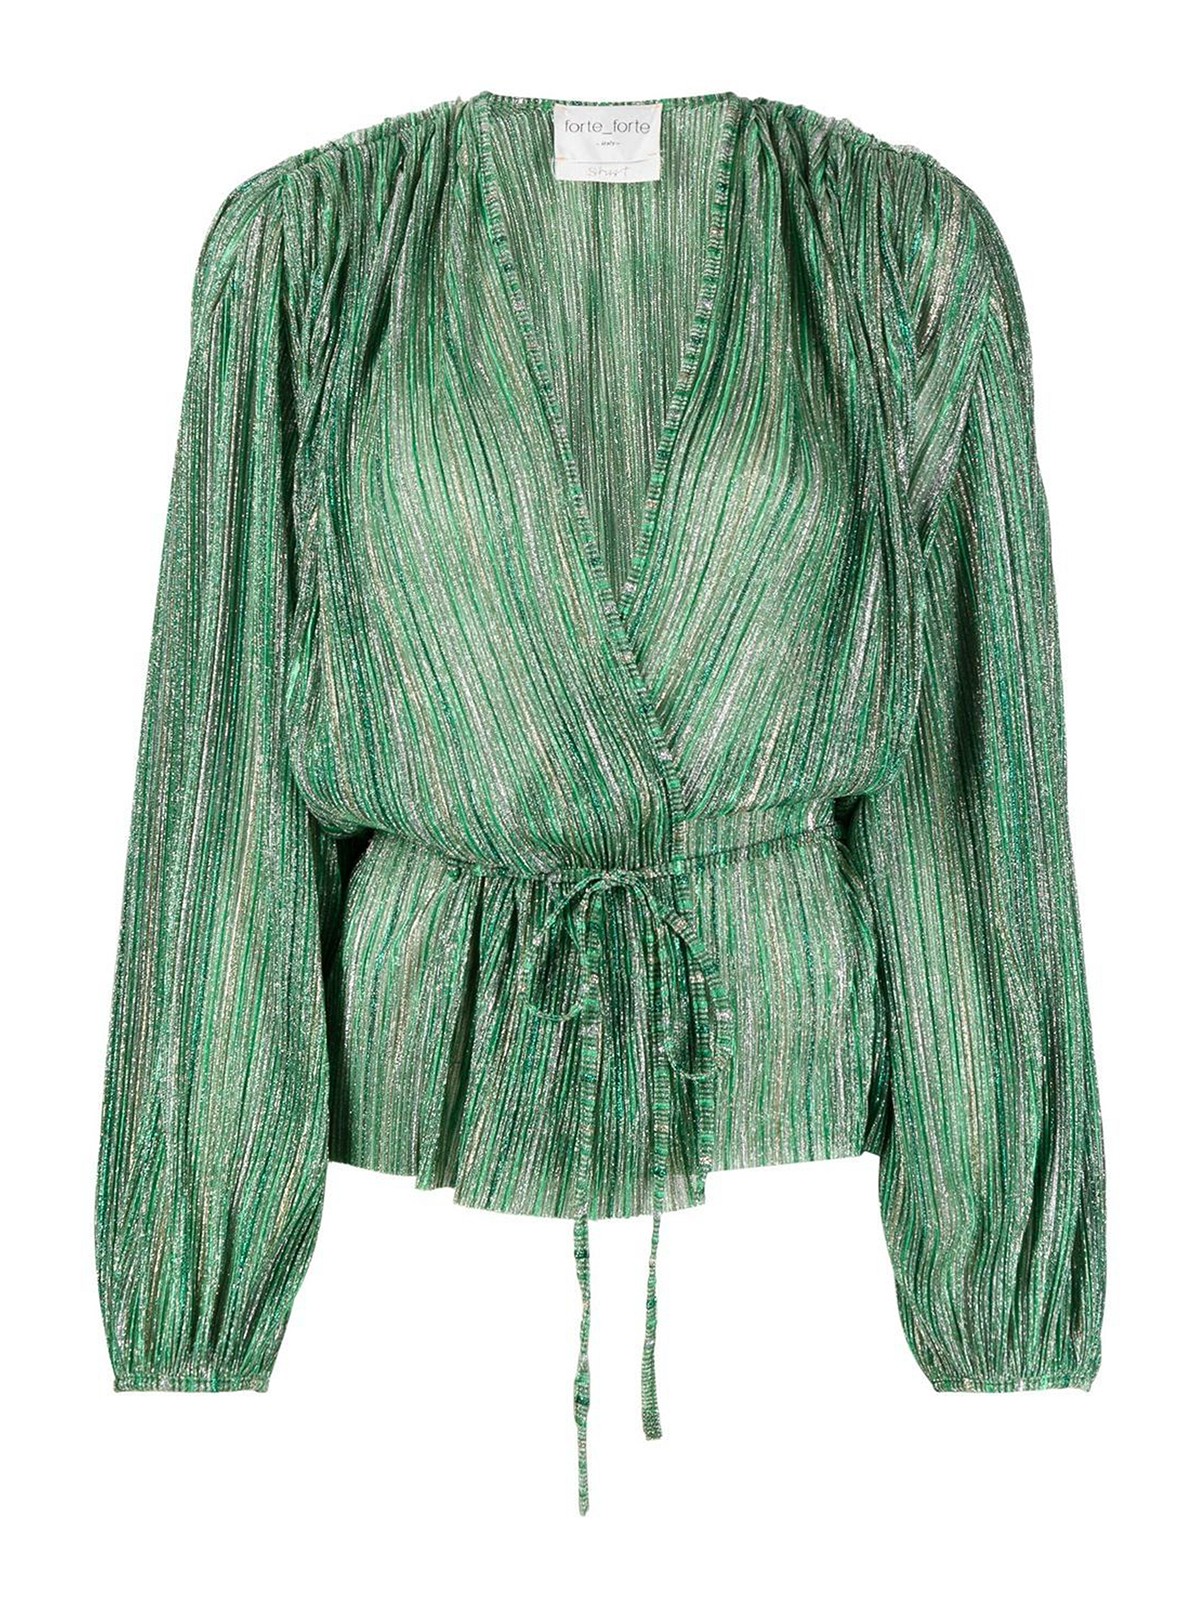 Bevatten bereik Verdeel Blouses Forte Forte - Striped metallic blouse - 10074MYSHIRT0169